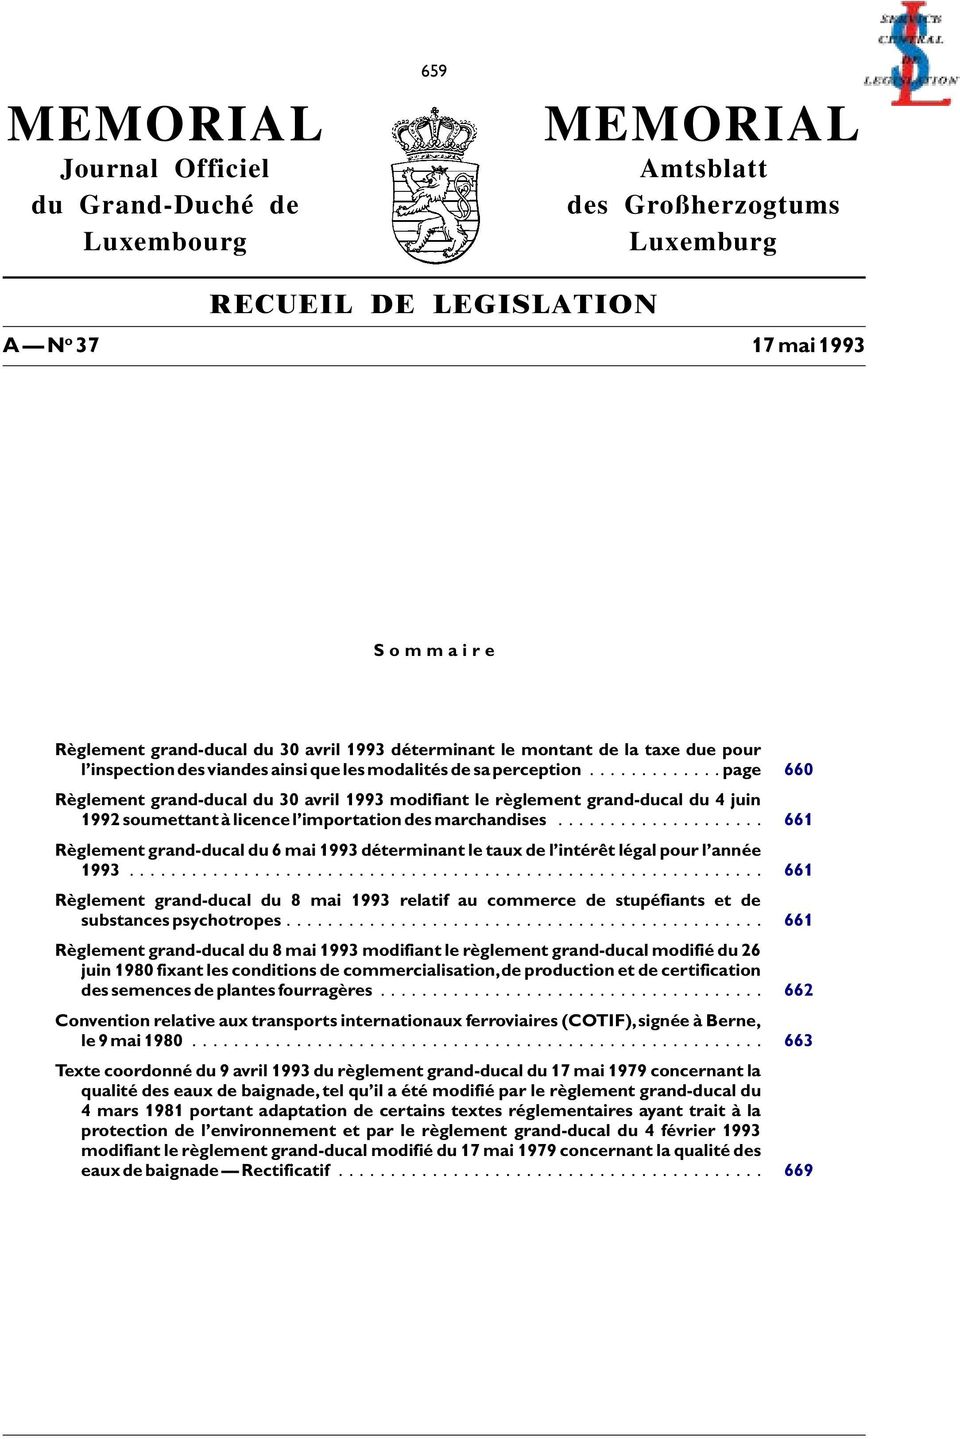 ..page 660 Règlement grand-ducal du 30 avril 1993 modifiant le règlement grand-ducal du 4 juin 1992soumettantàlicencel importationdesmarchandises.